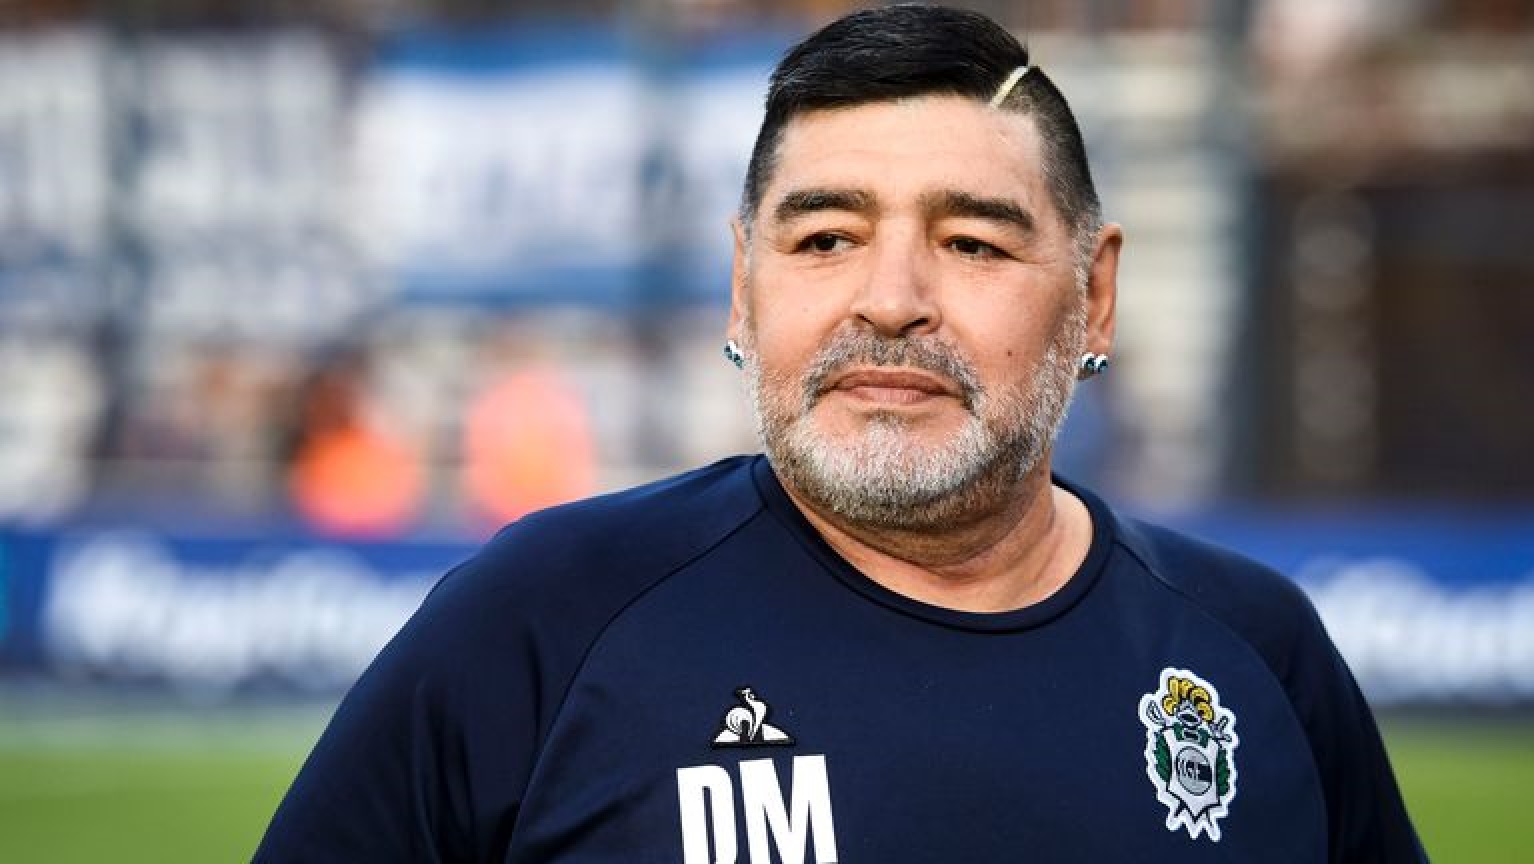 O jogador de futebol Diego Maradona (Imagem: Notisul)